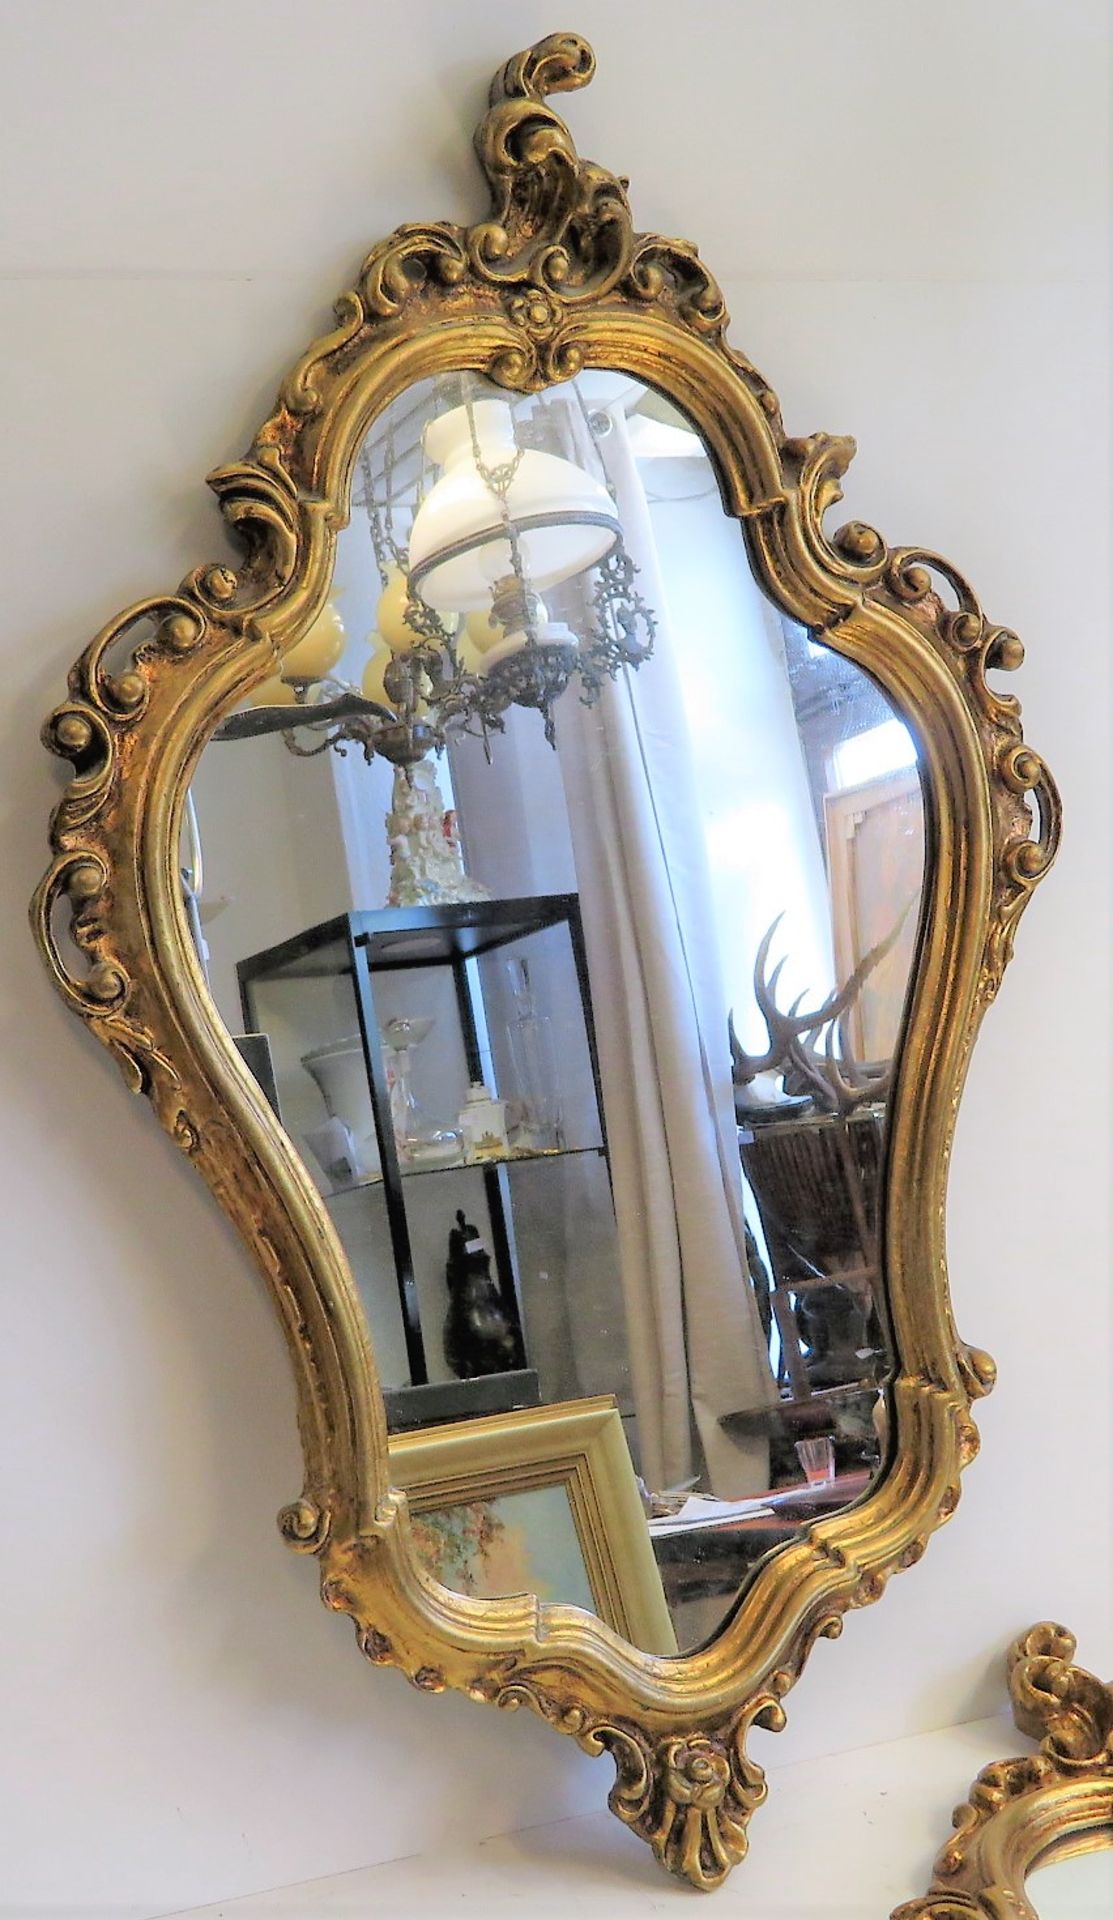 2 Spiegel, Barockstil, vergoldet, 90 x 56 cm.